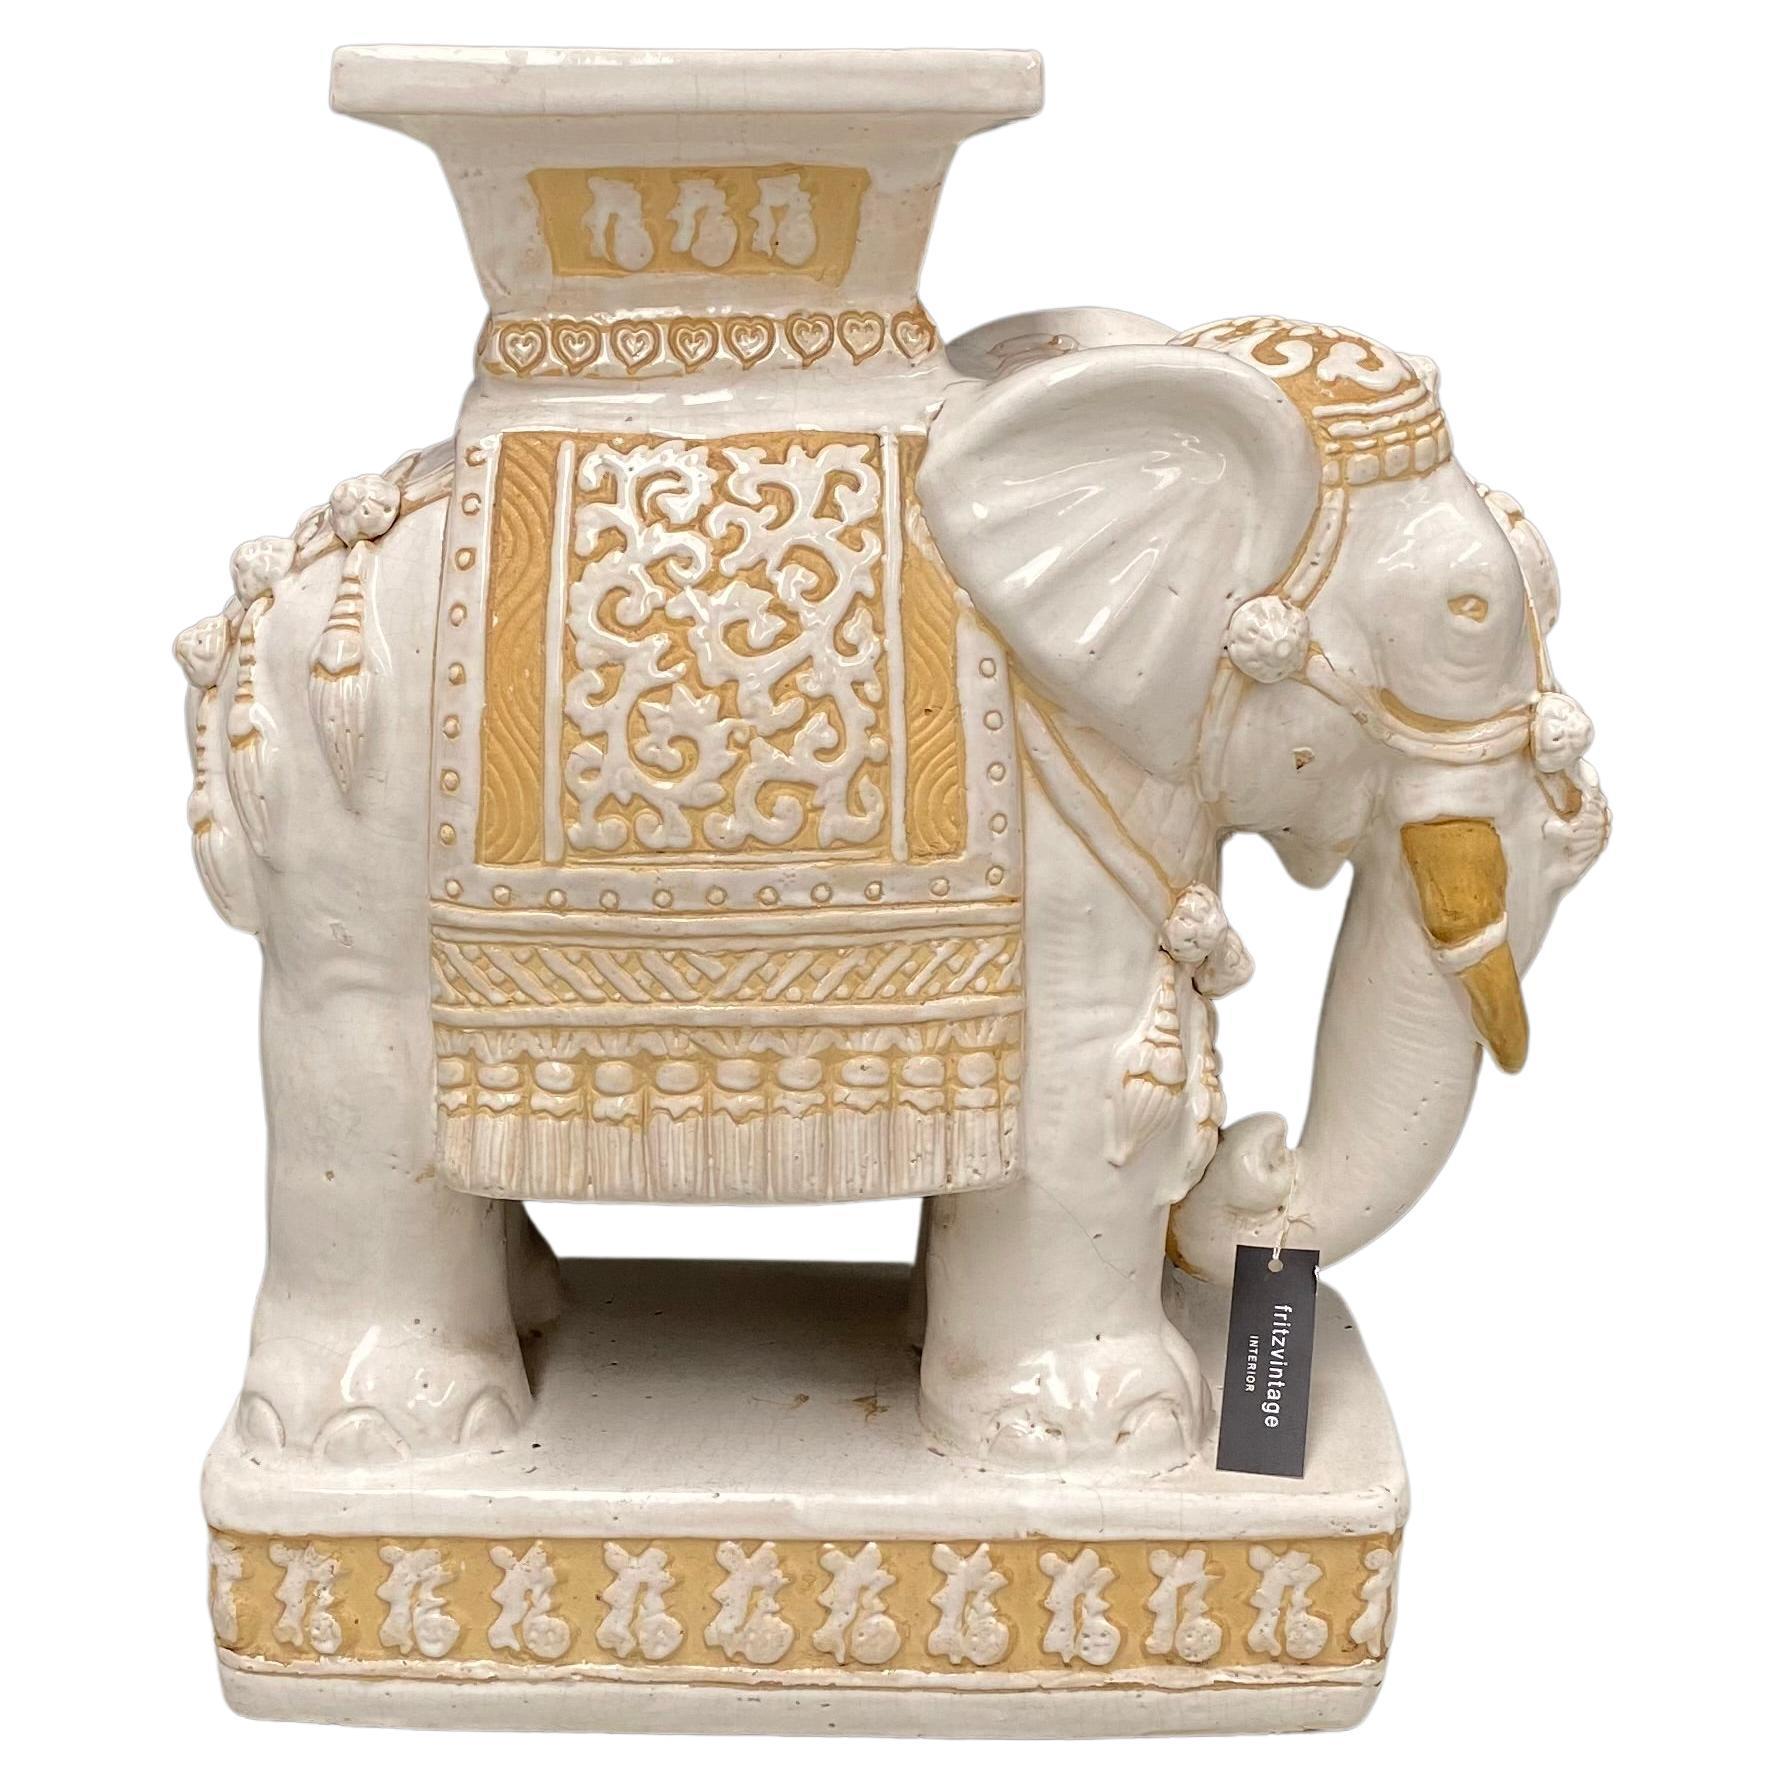 Ce rare cache-pot éléphant en céramique beige et blanche a été conçu et fabriqué en Inde dans les années soixante-dix. En très bon état et sans dommages.